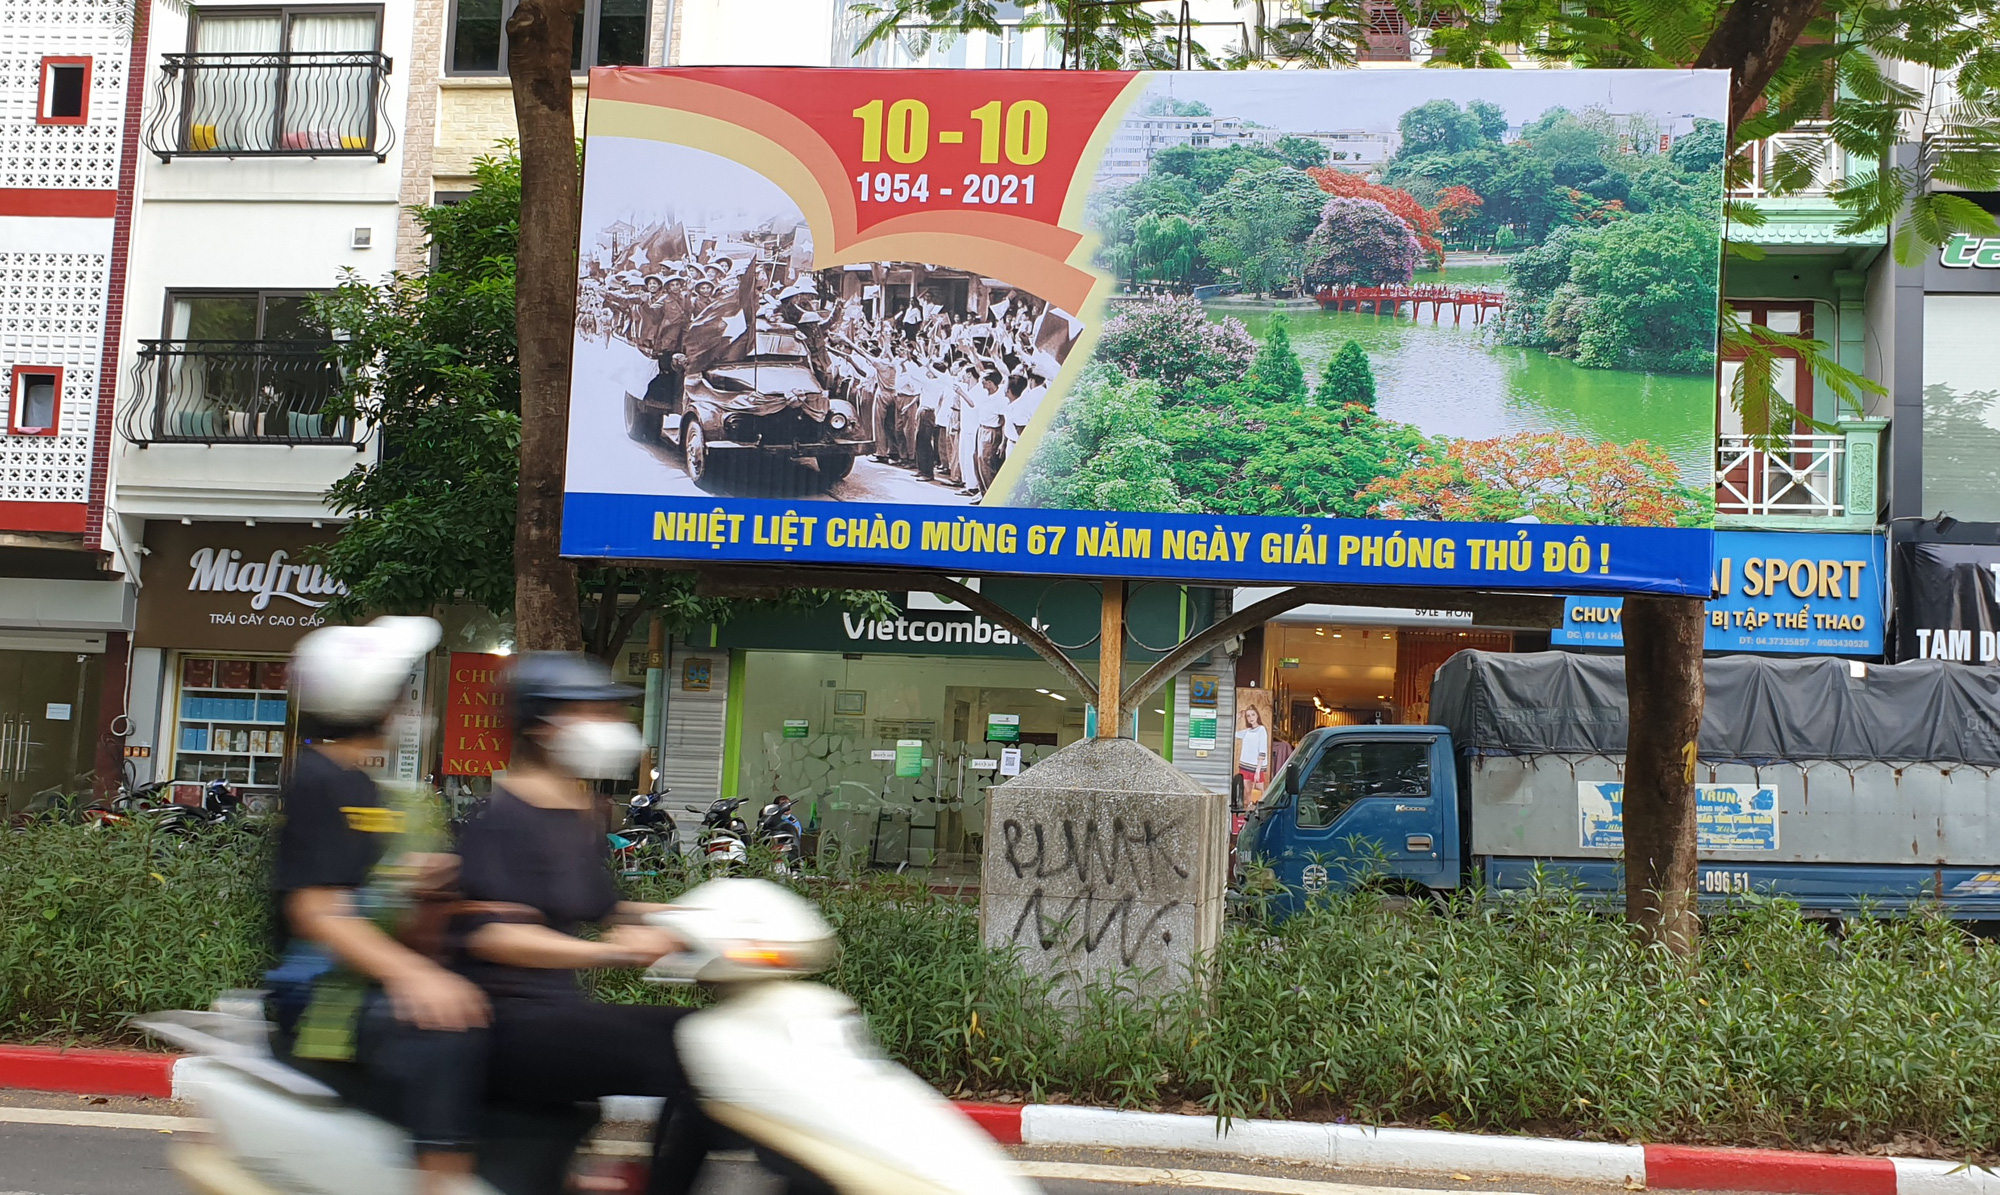 Đường phố Hà Nội rực rỡ pano, áp phích chào mừng kỷ niệm 67 năm Ngày Giải phóng Thủ đô - Ảnh 11.